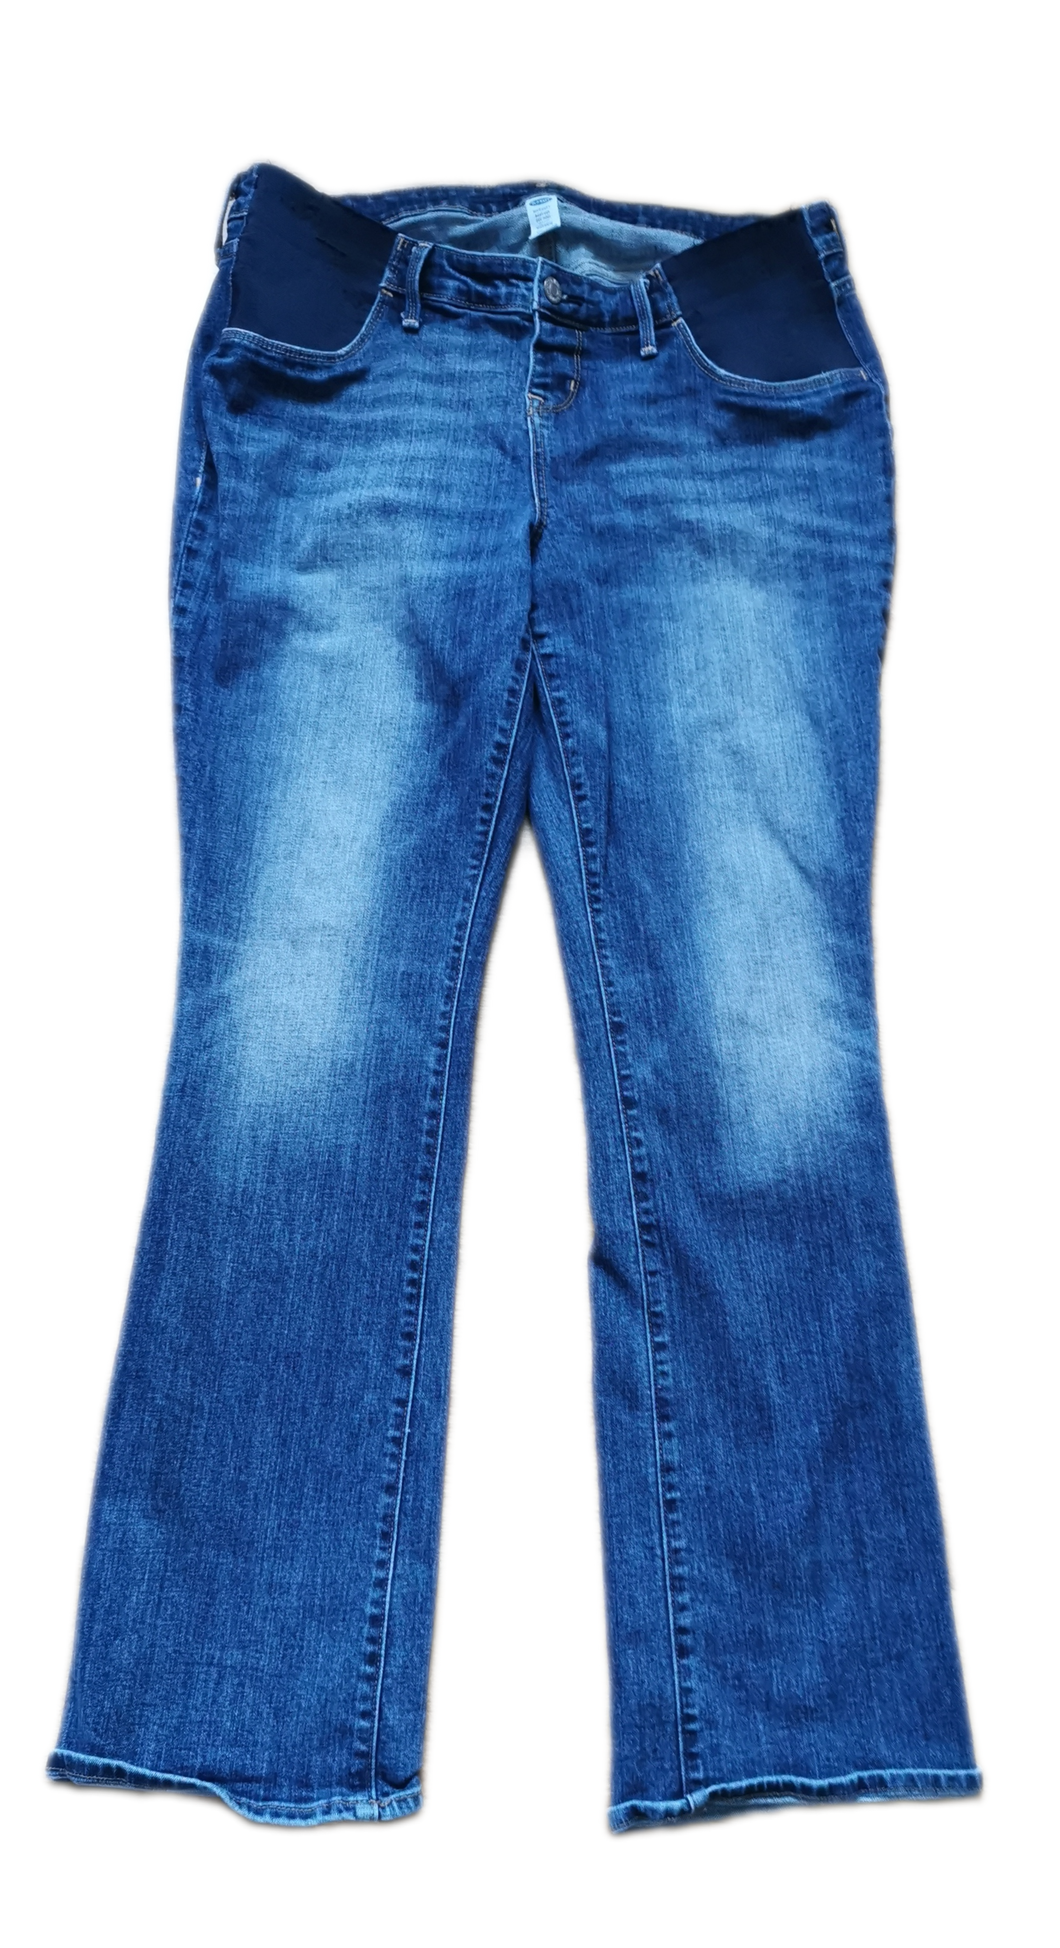 Jeans maternité Large - Xlarge Old Navy (C:ASD)